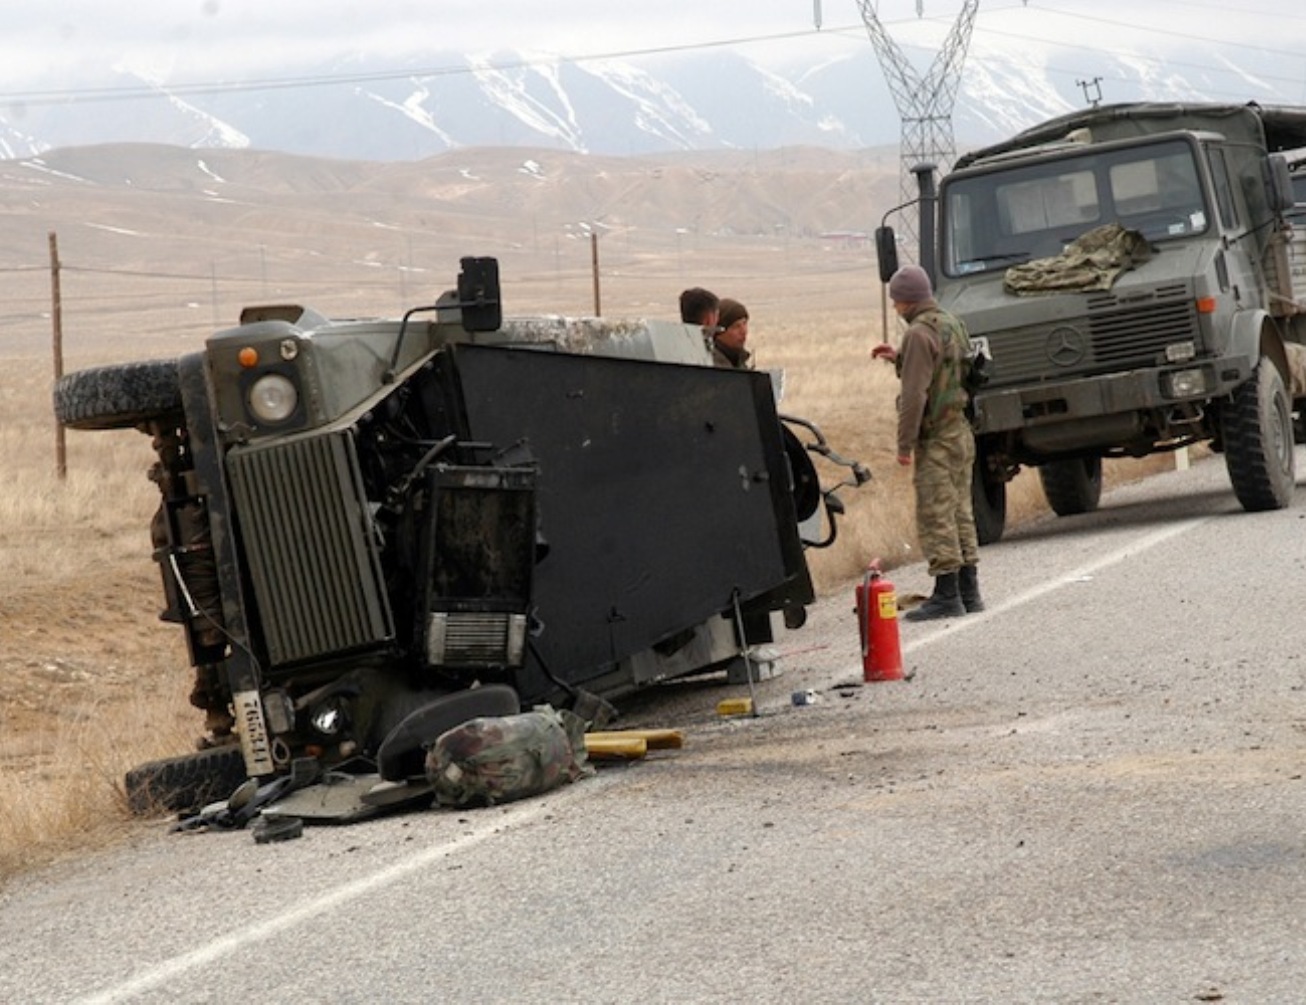 Nusaybin'de zırhlı araca saldırı: 1 asker hayatını kaybetti